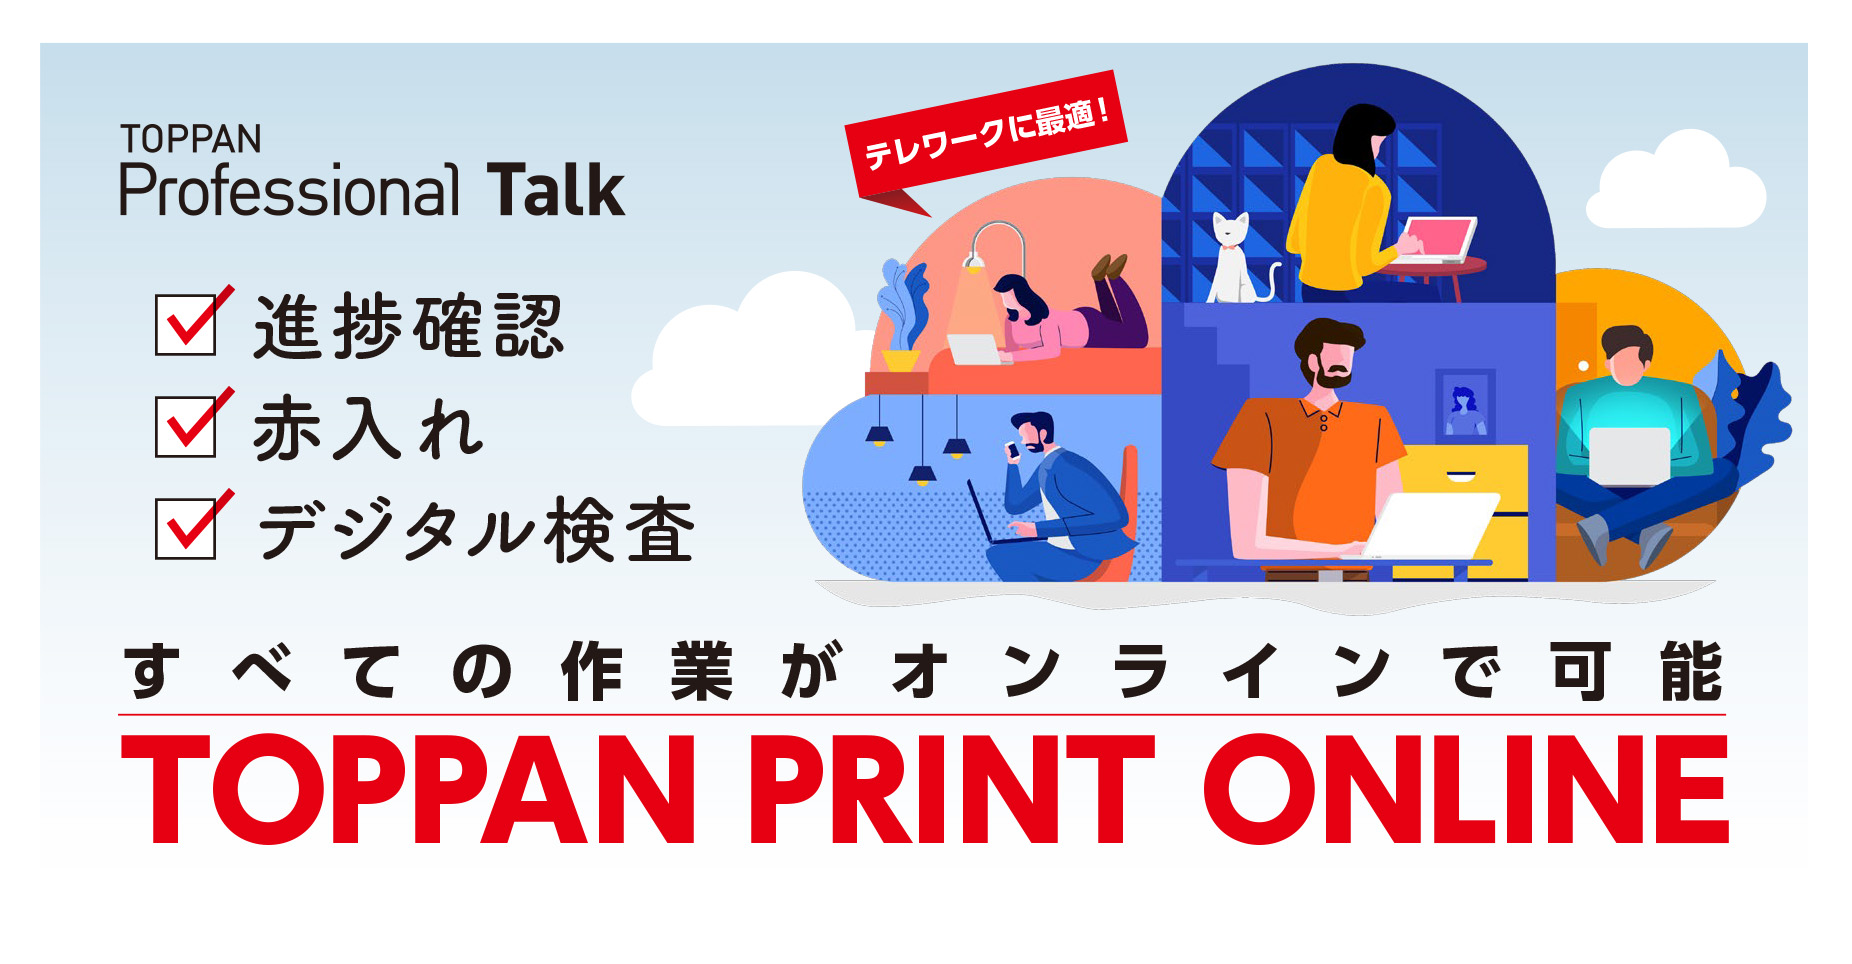 「オンライン校正支援システム“TOPPAN PRINT ONLINE”」セミナー © Toppan Printing Co., Ltd.